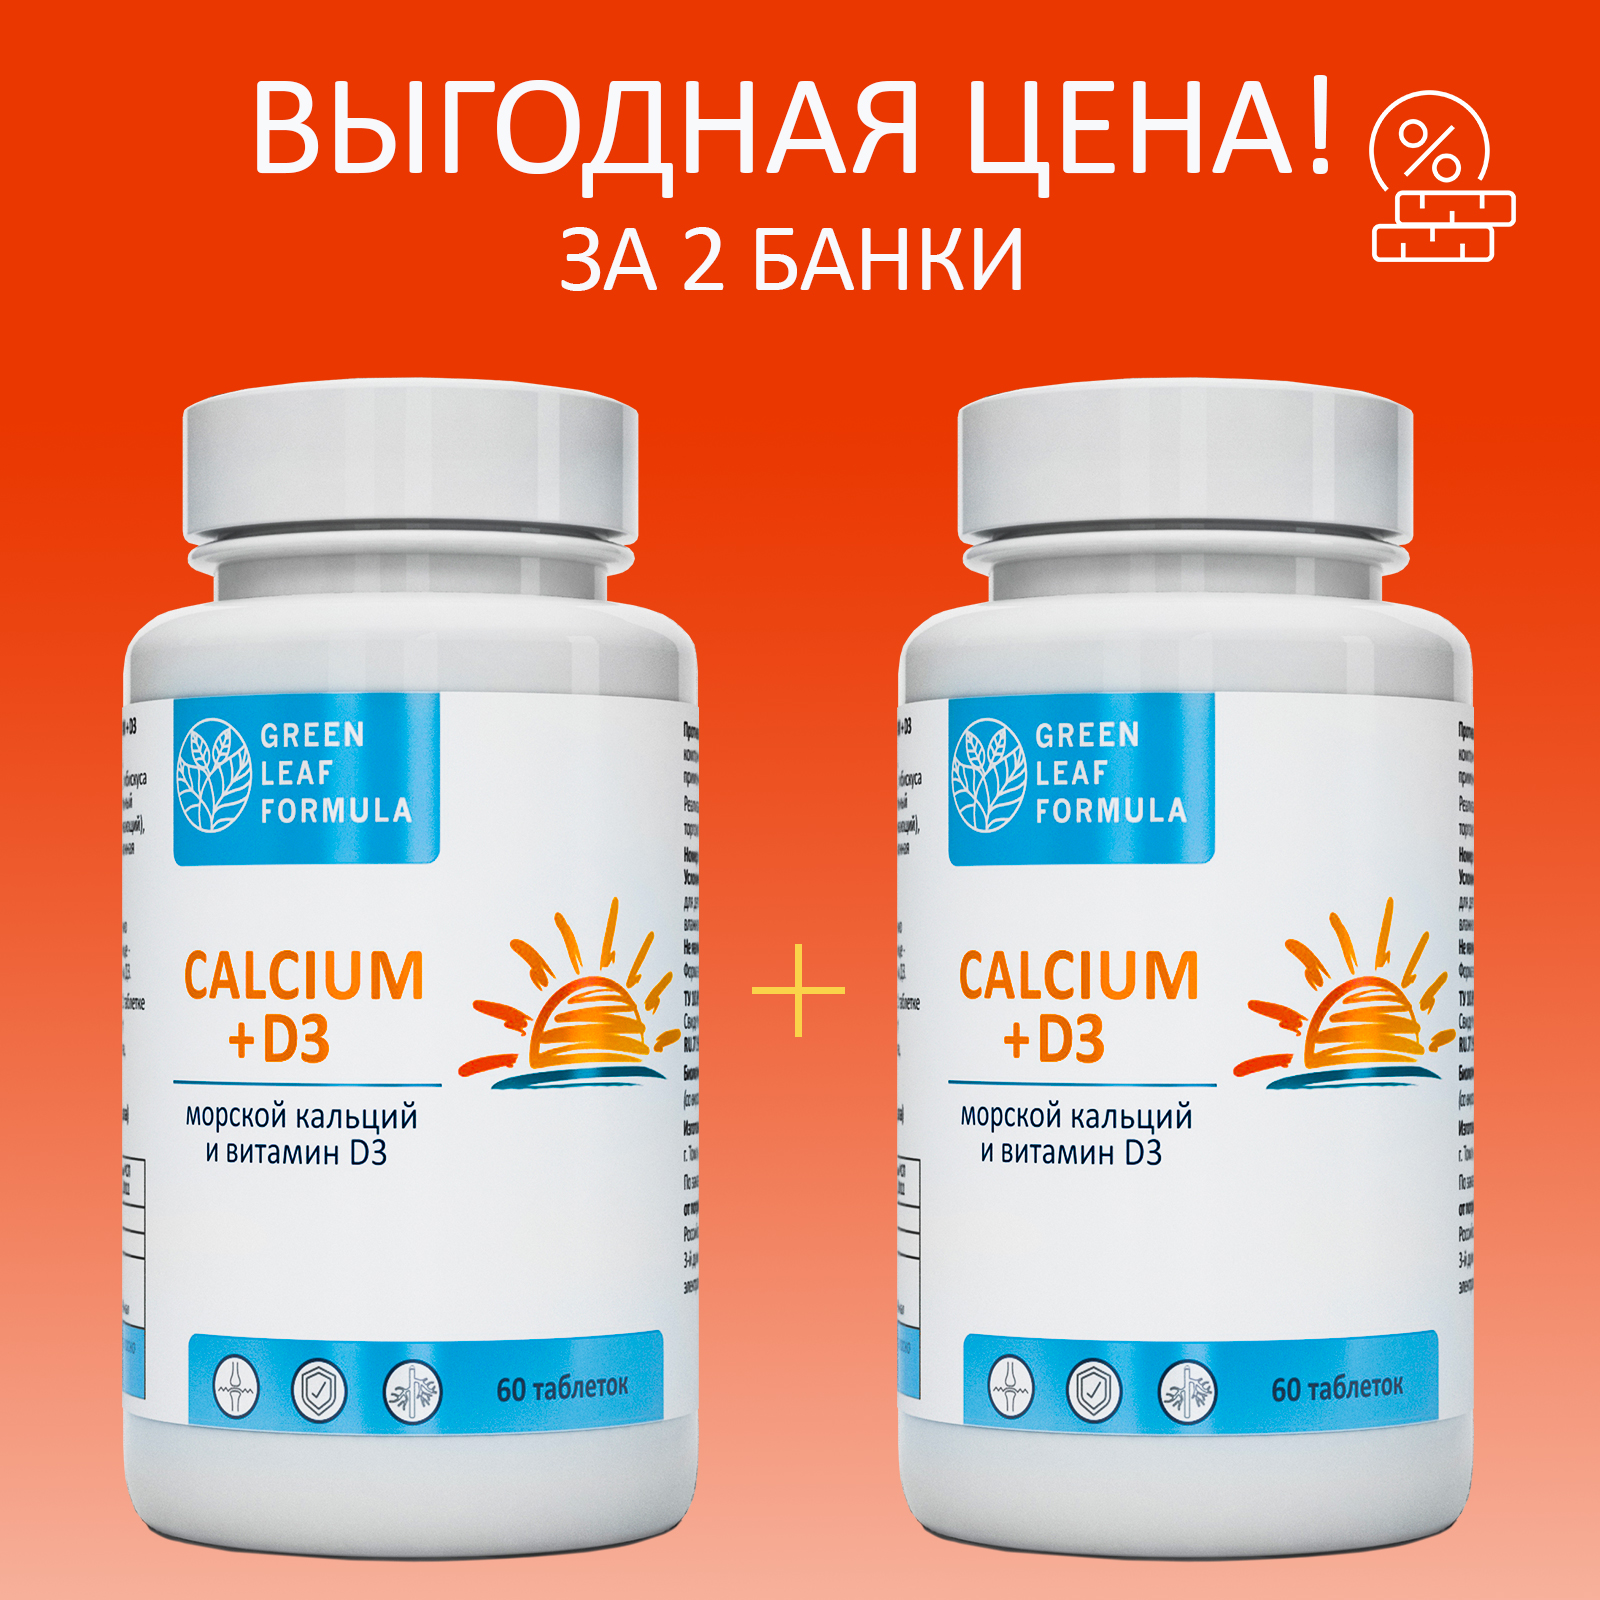 Calcium D3 Кальций Д3 Green Leaf Formula витамины для костей и суставов 2 банки по 60 таблеток - фото 2